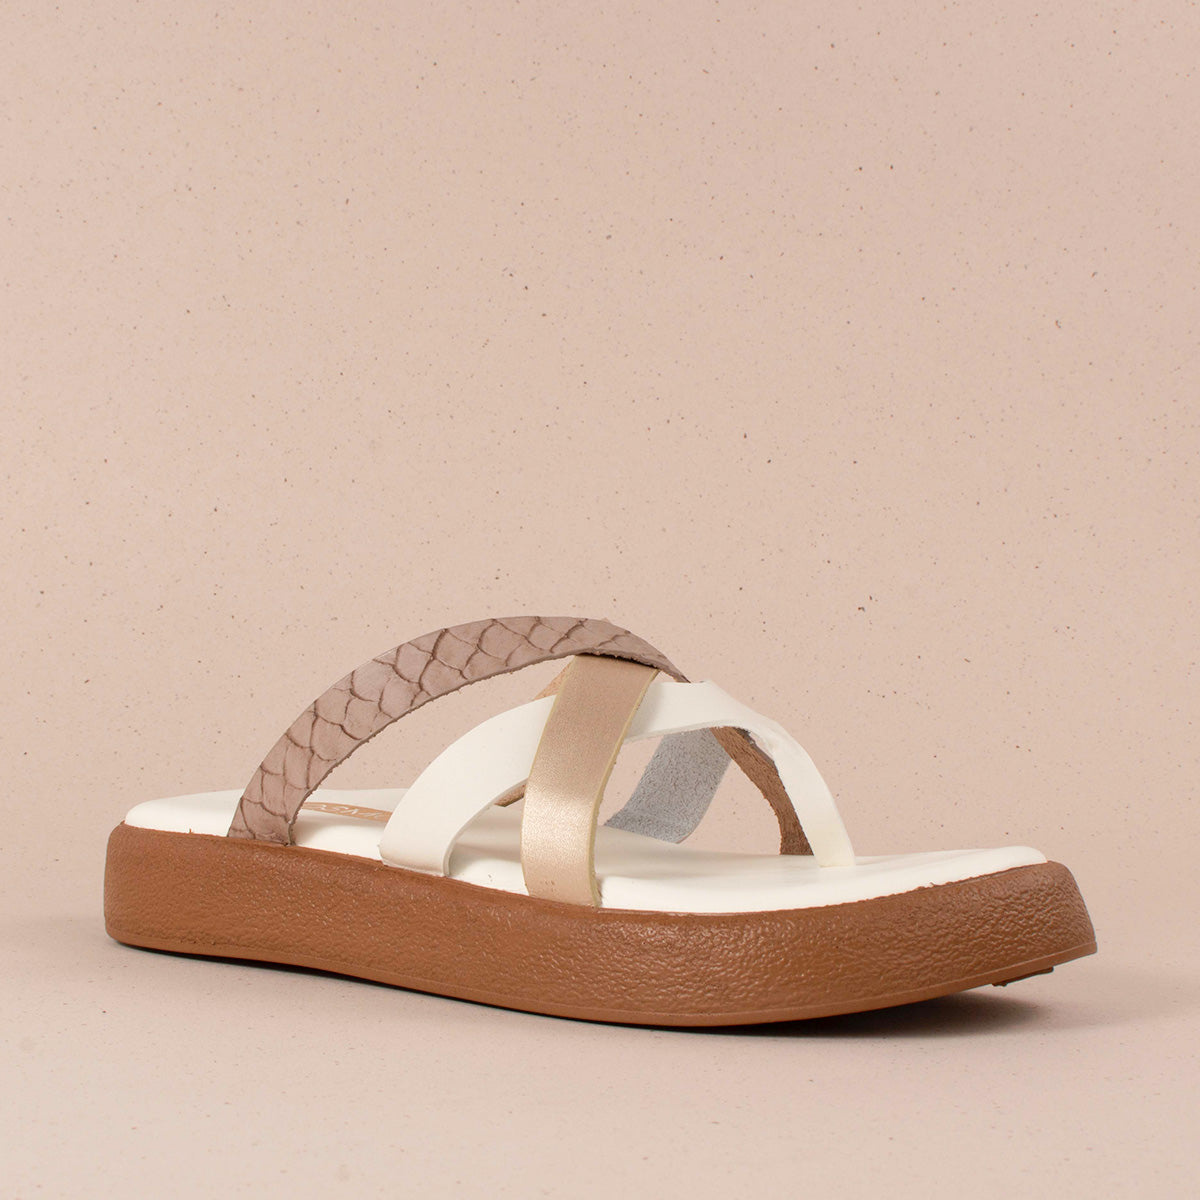 Sandalias planas en cuero color talco con correas cruzadas 104122